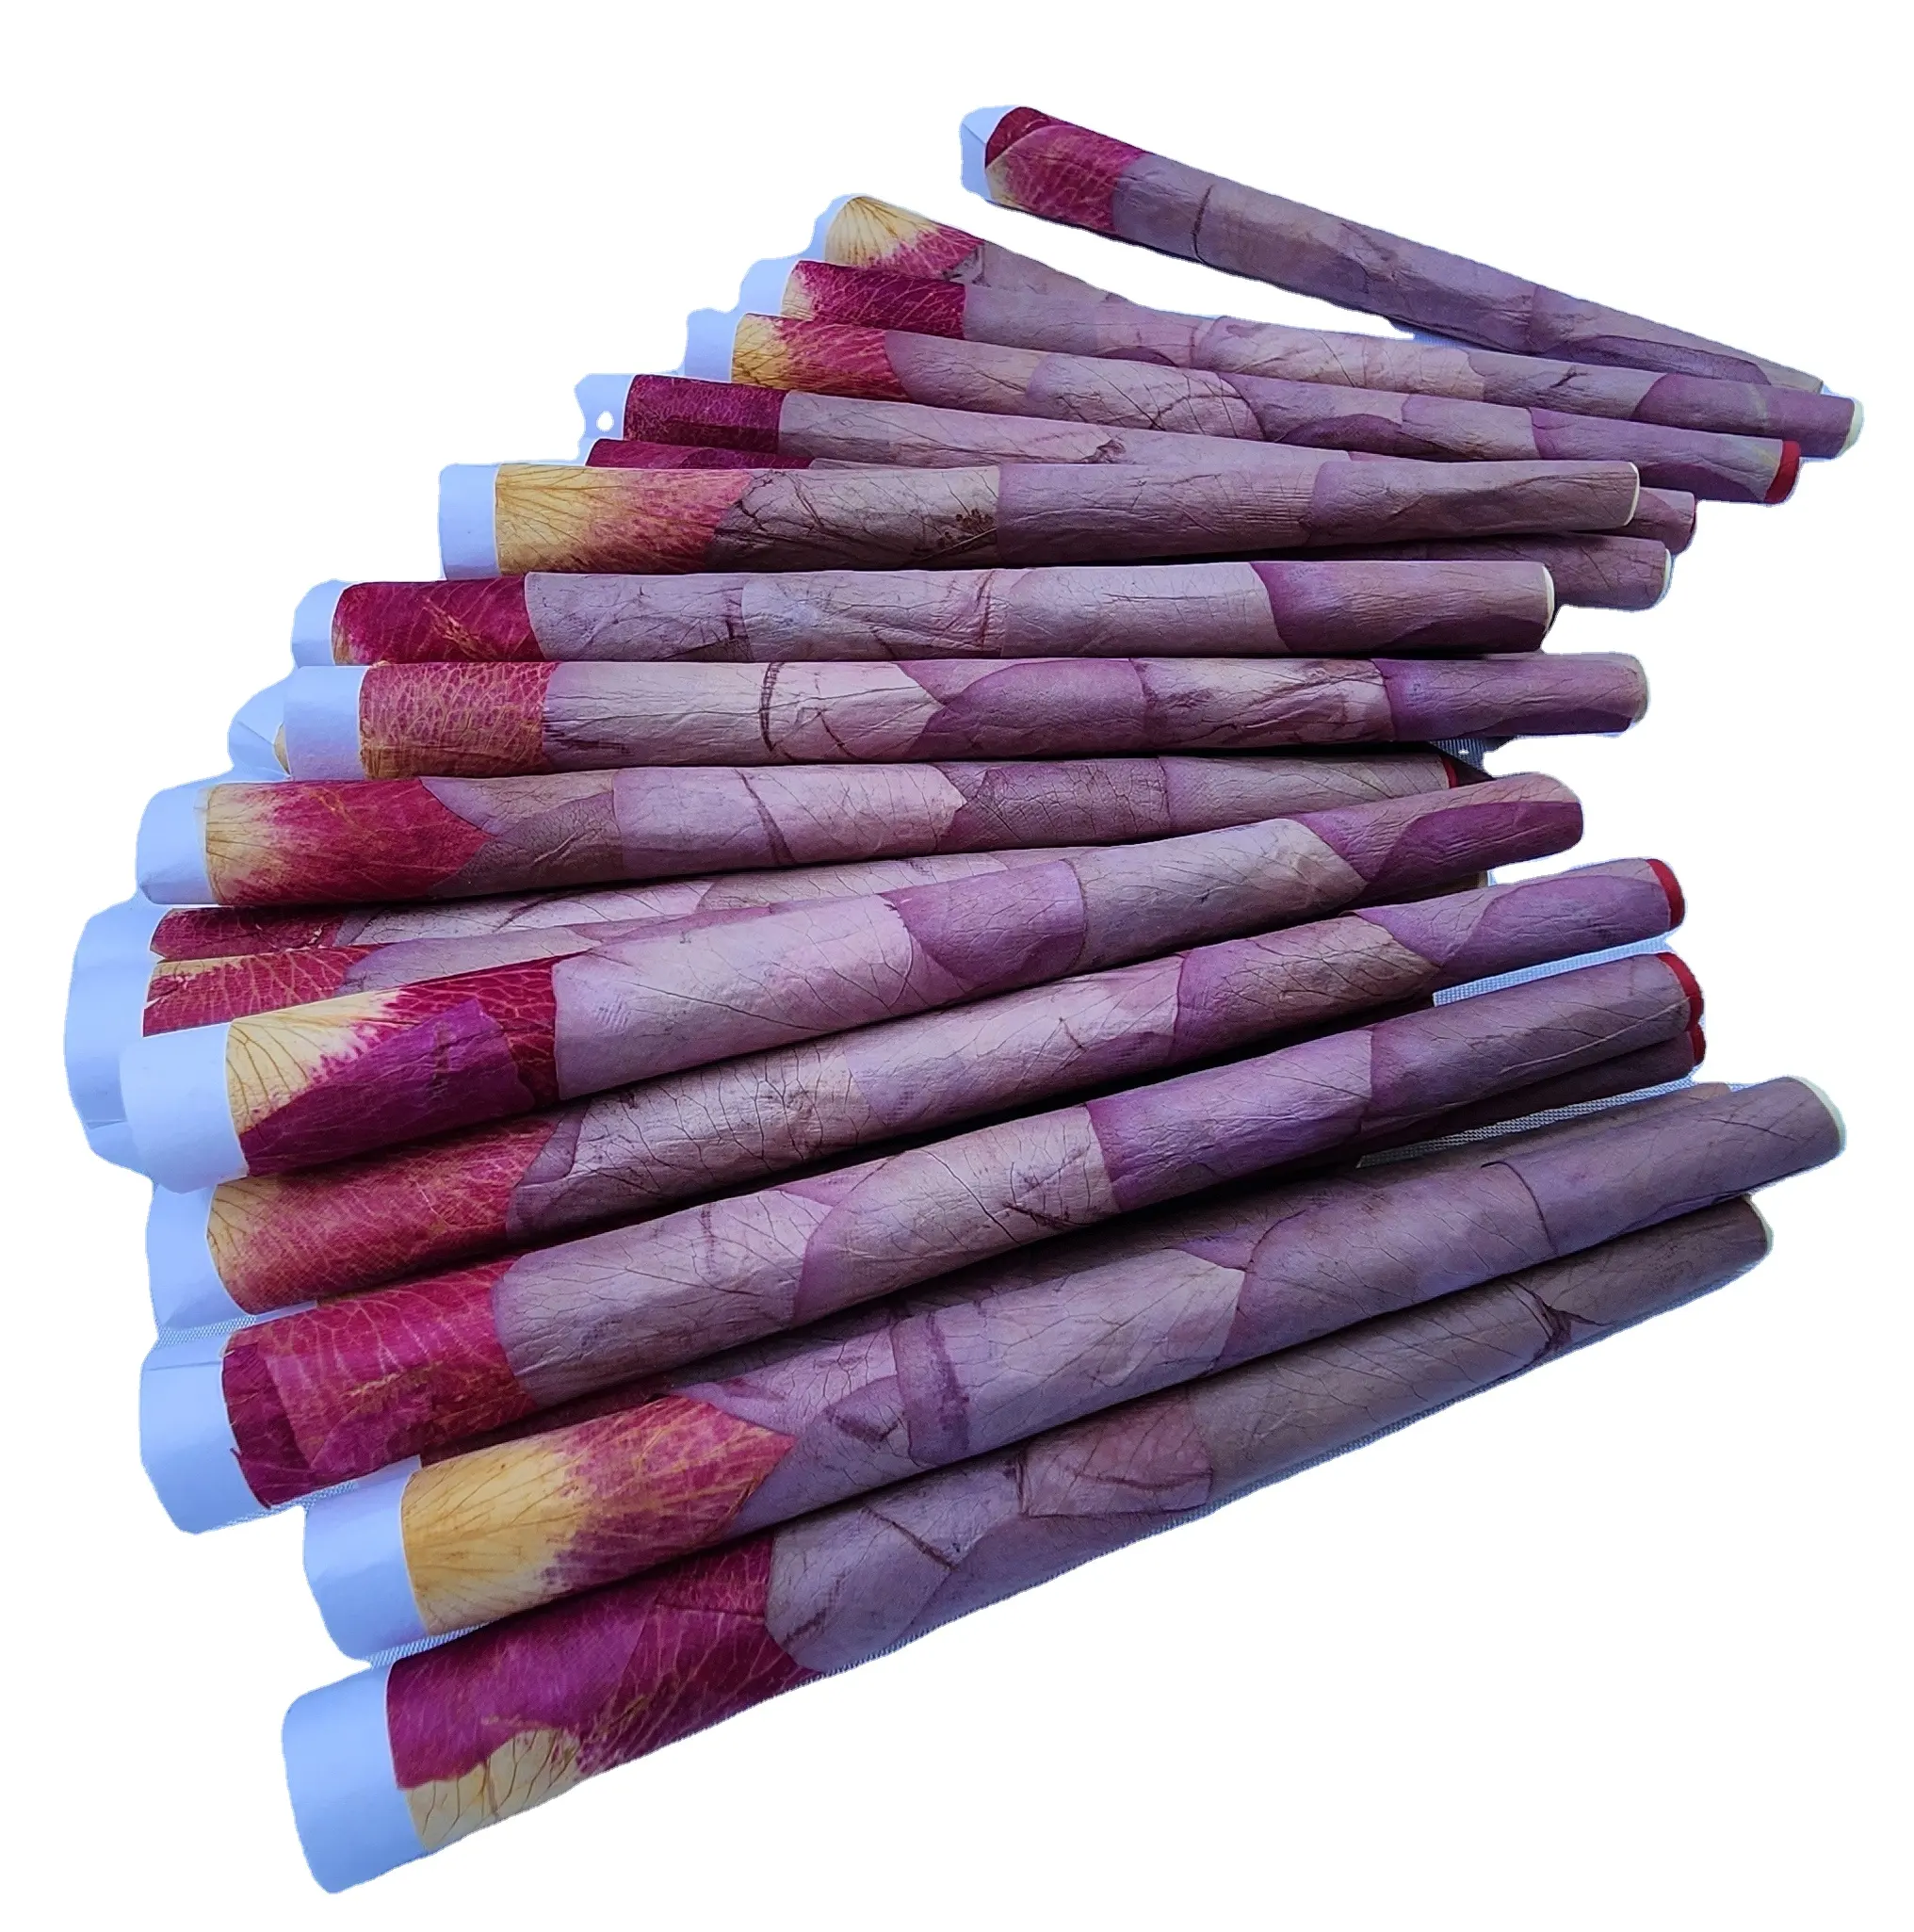 Colori succulenti esoticamente diversi coni rosa sfumature di colore unico rosso brillante giallo bordeaux rosa viola crema bianco blu